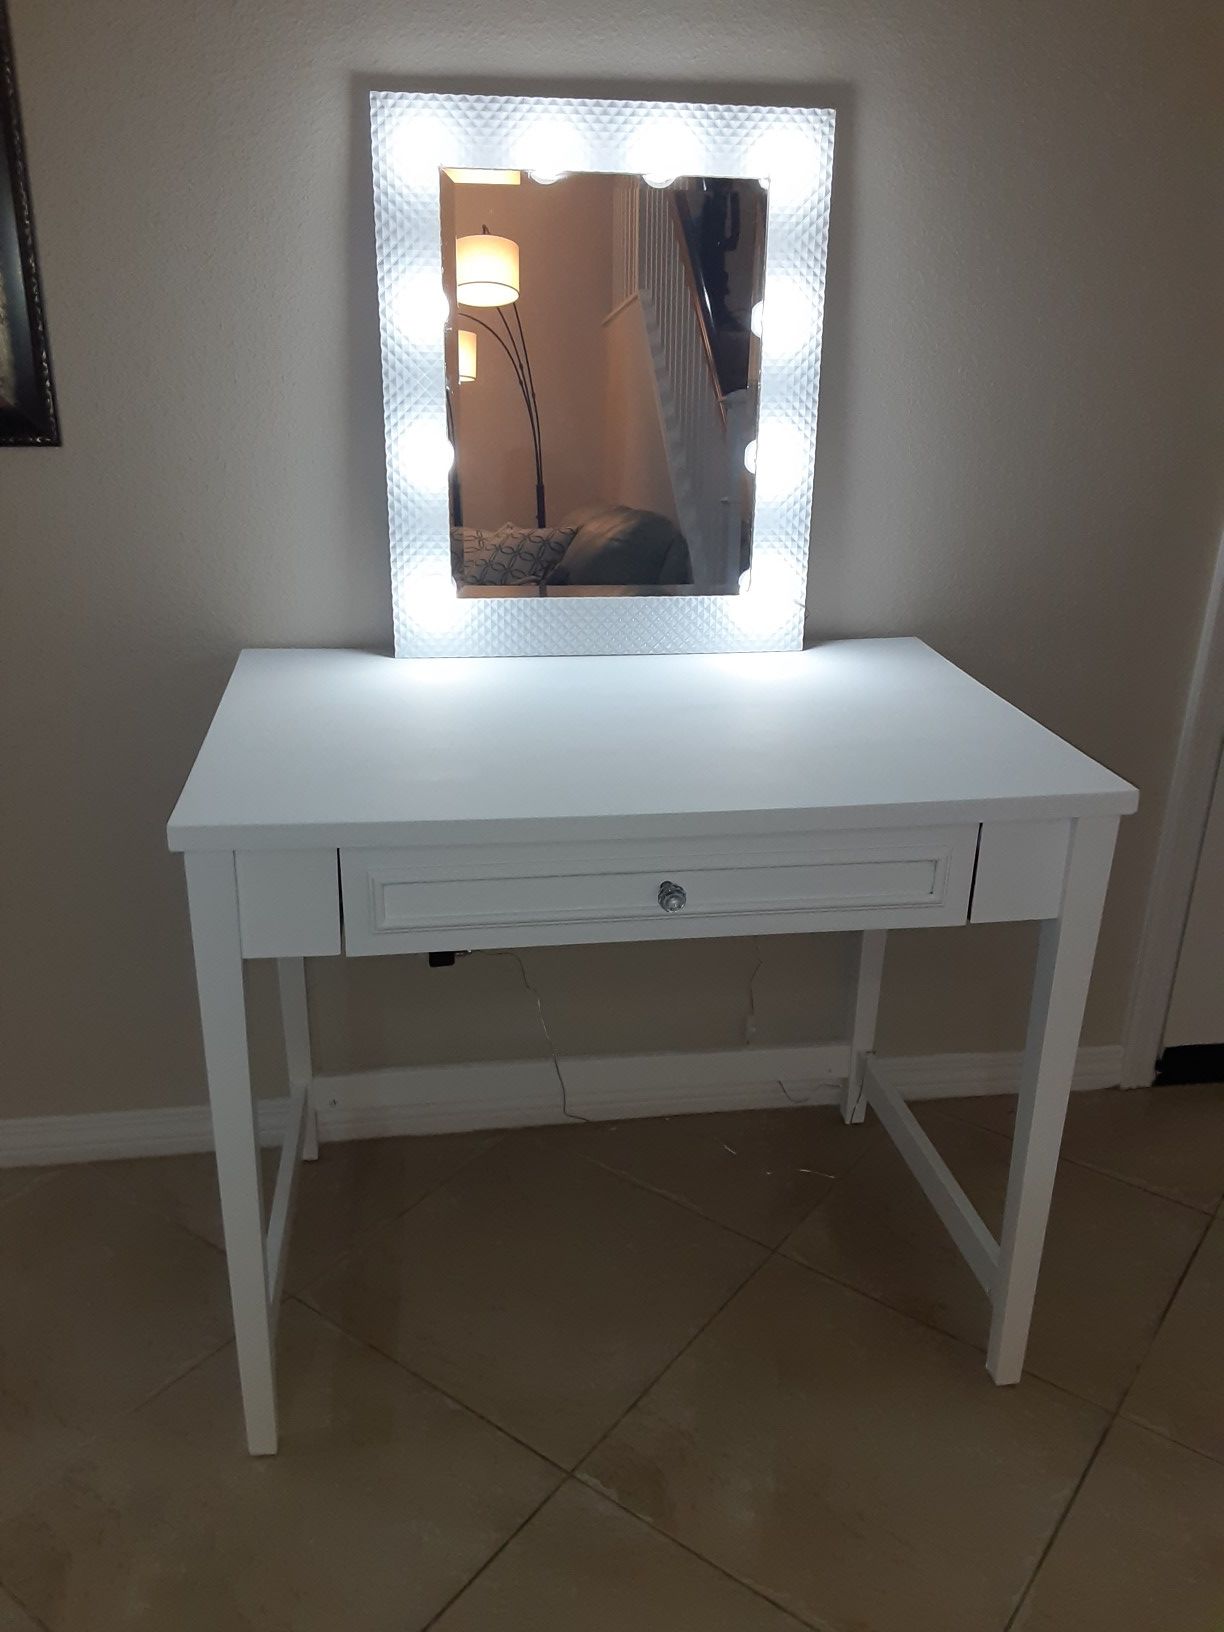 Wooden vanity desk and mirror